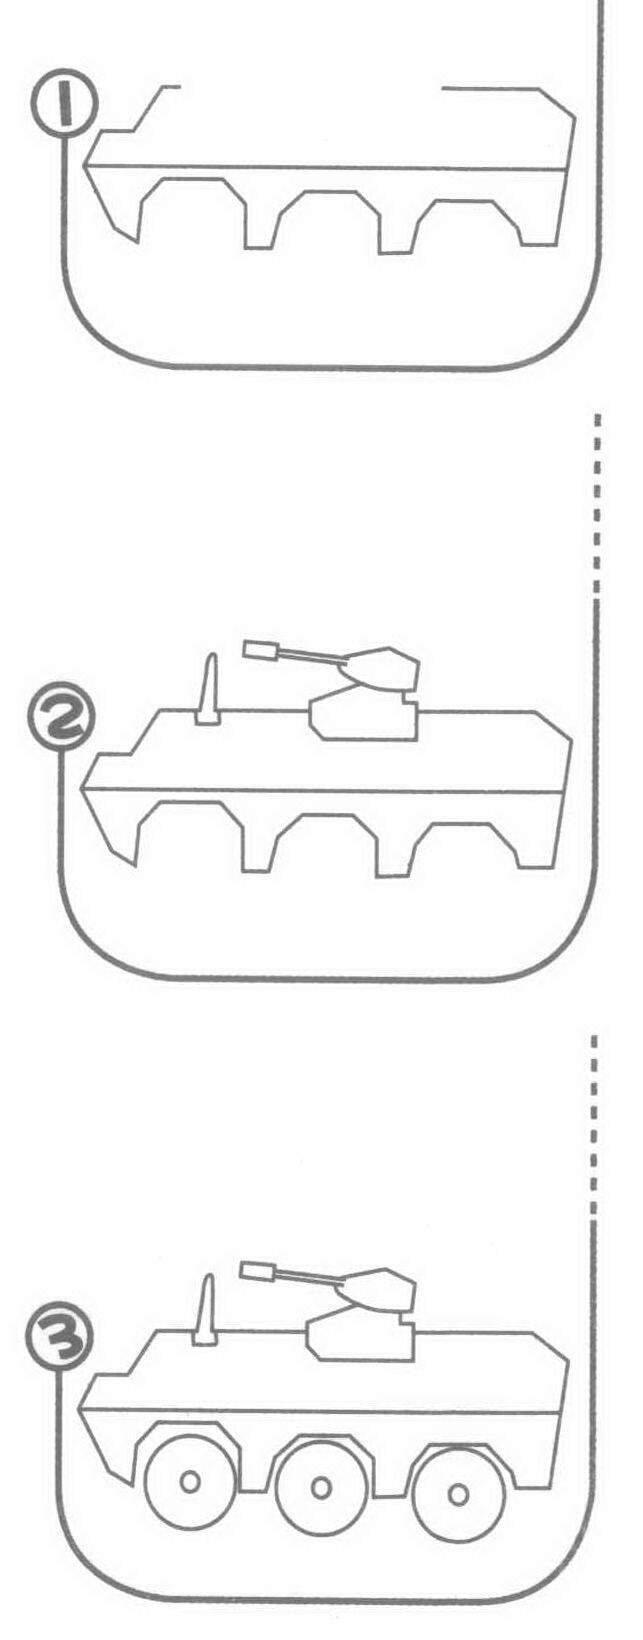 装甲车简笔画分解步骤图教程 装甲车简笔画图片大全